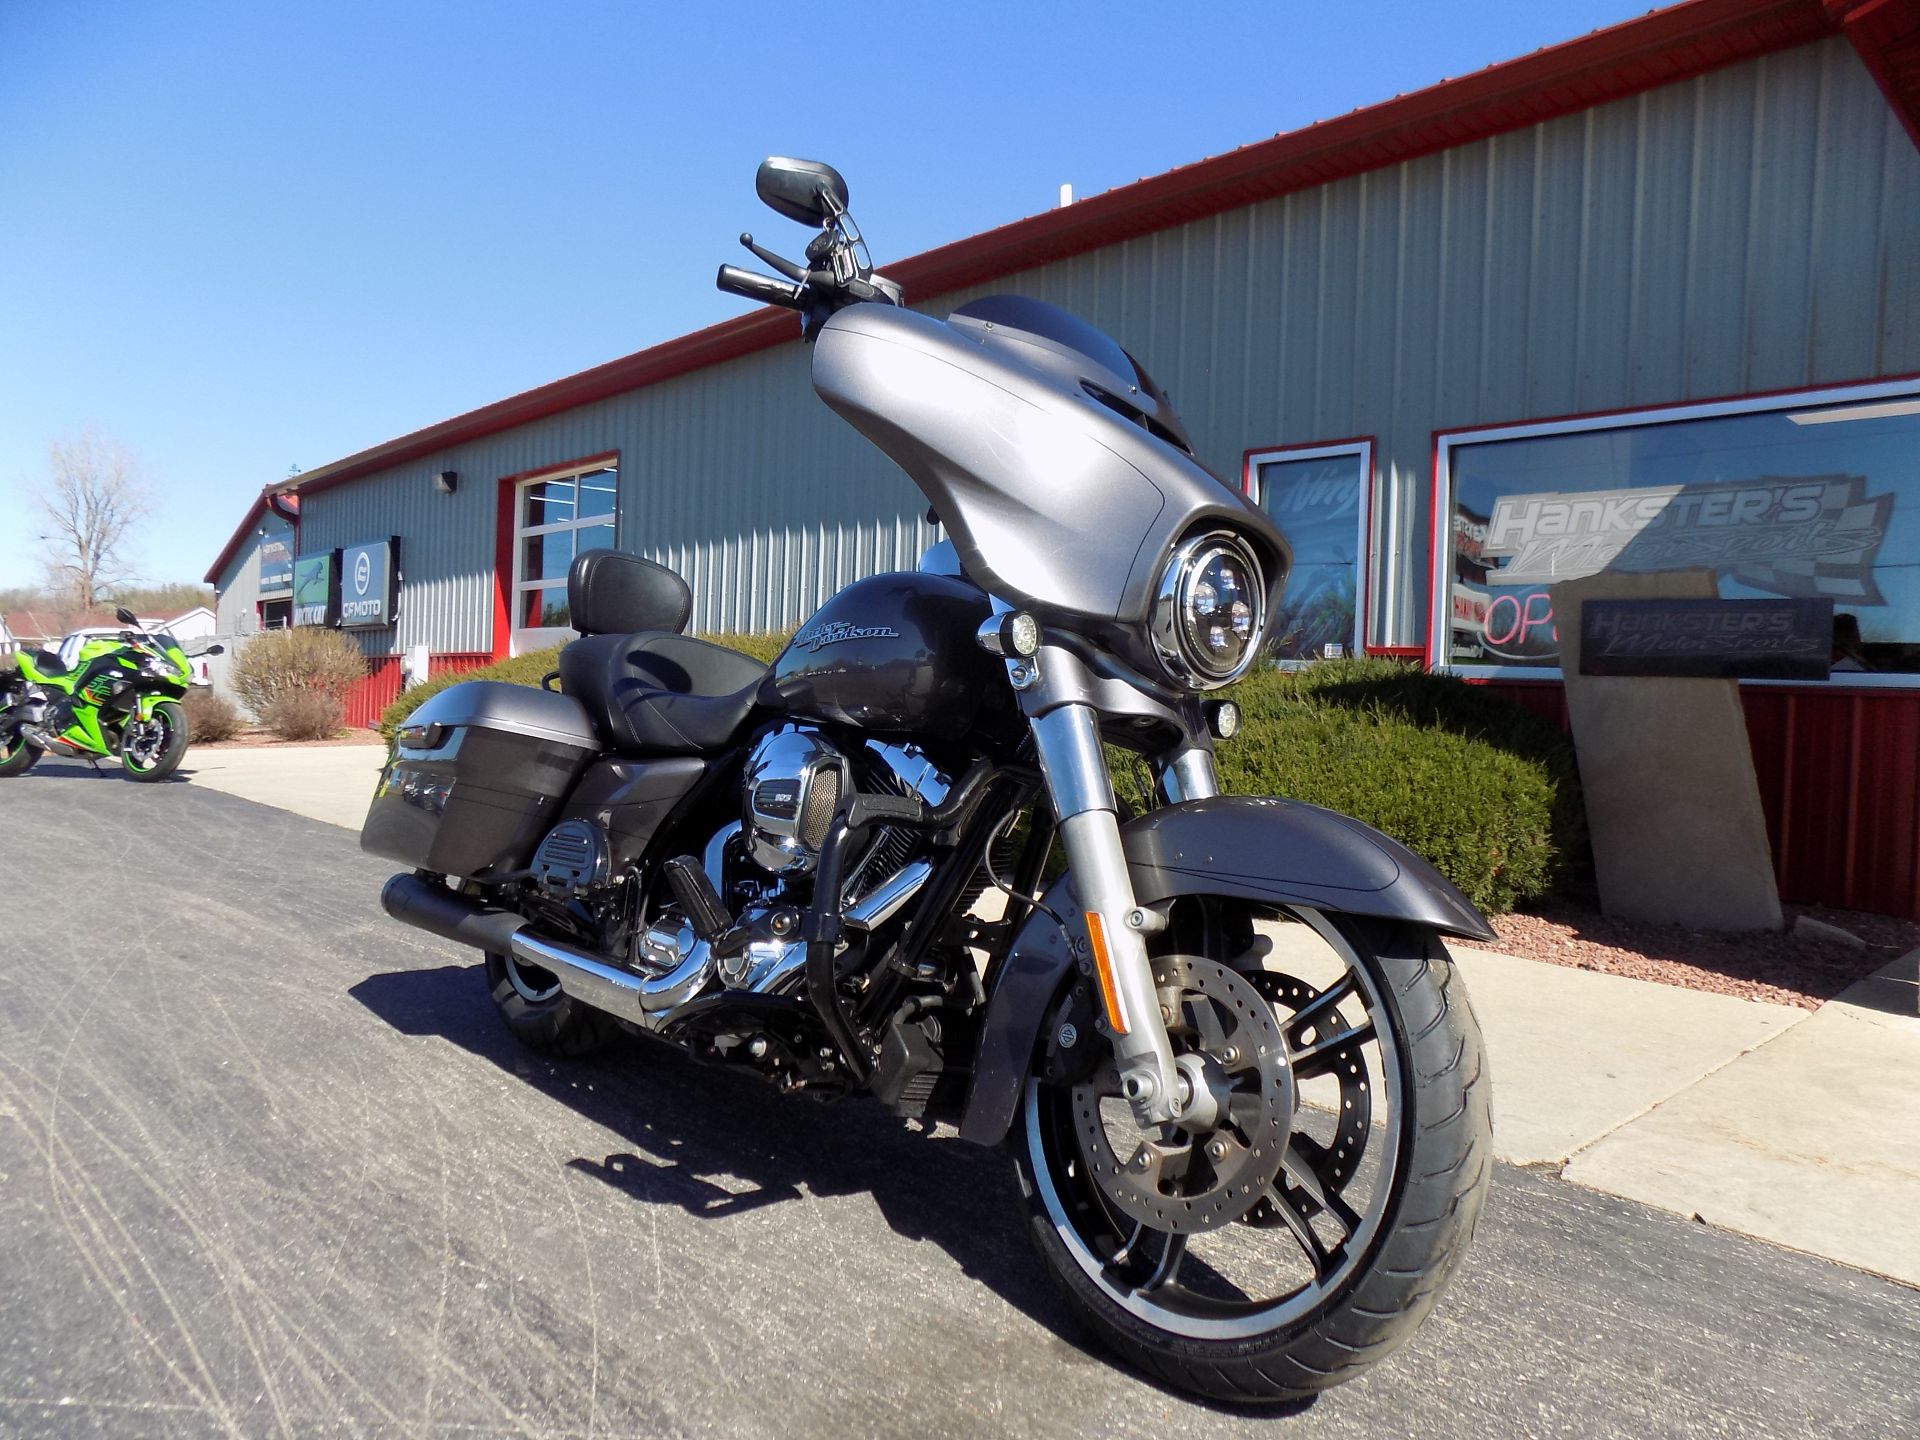 2015 Harley-Davidson Street Glide® Special in Janesville, Wisconsin - Photo 2